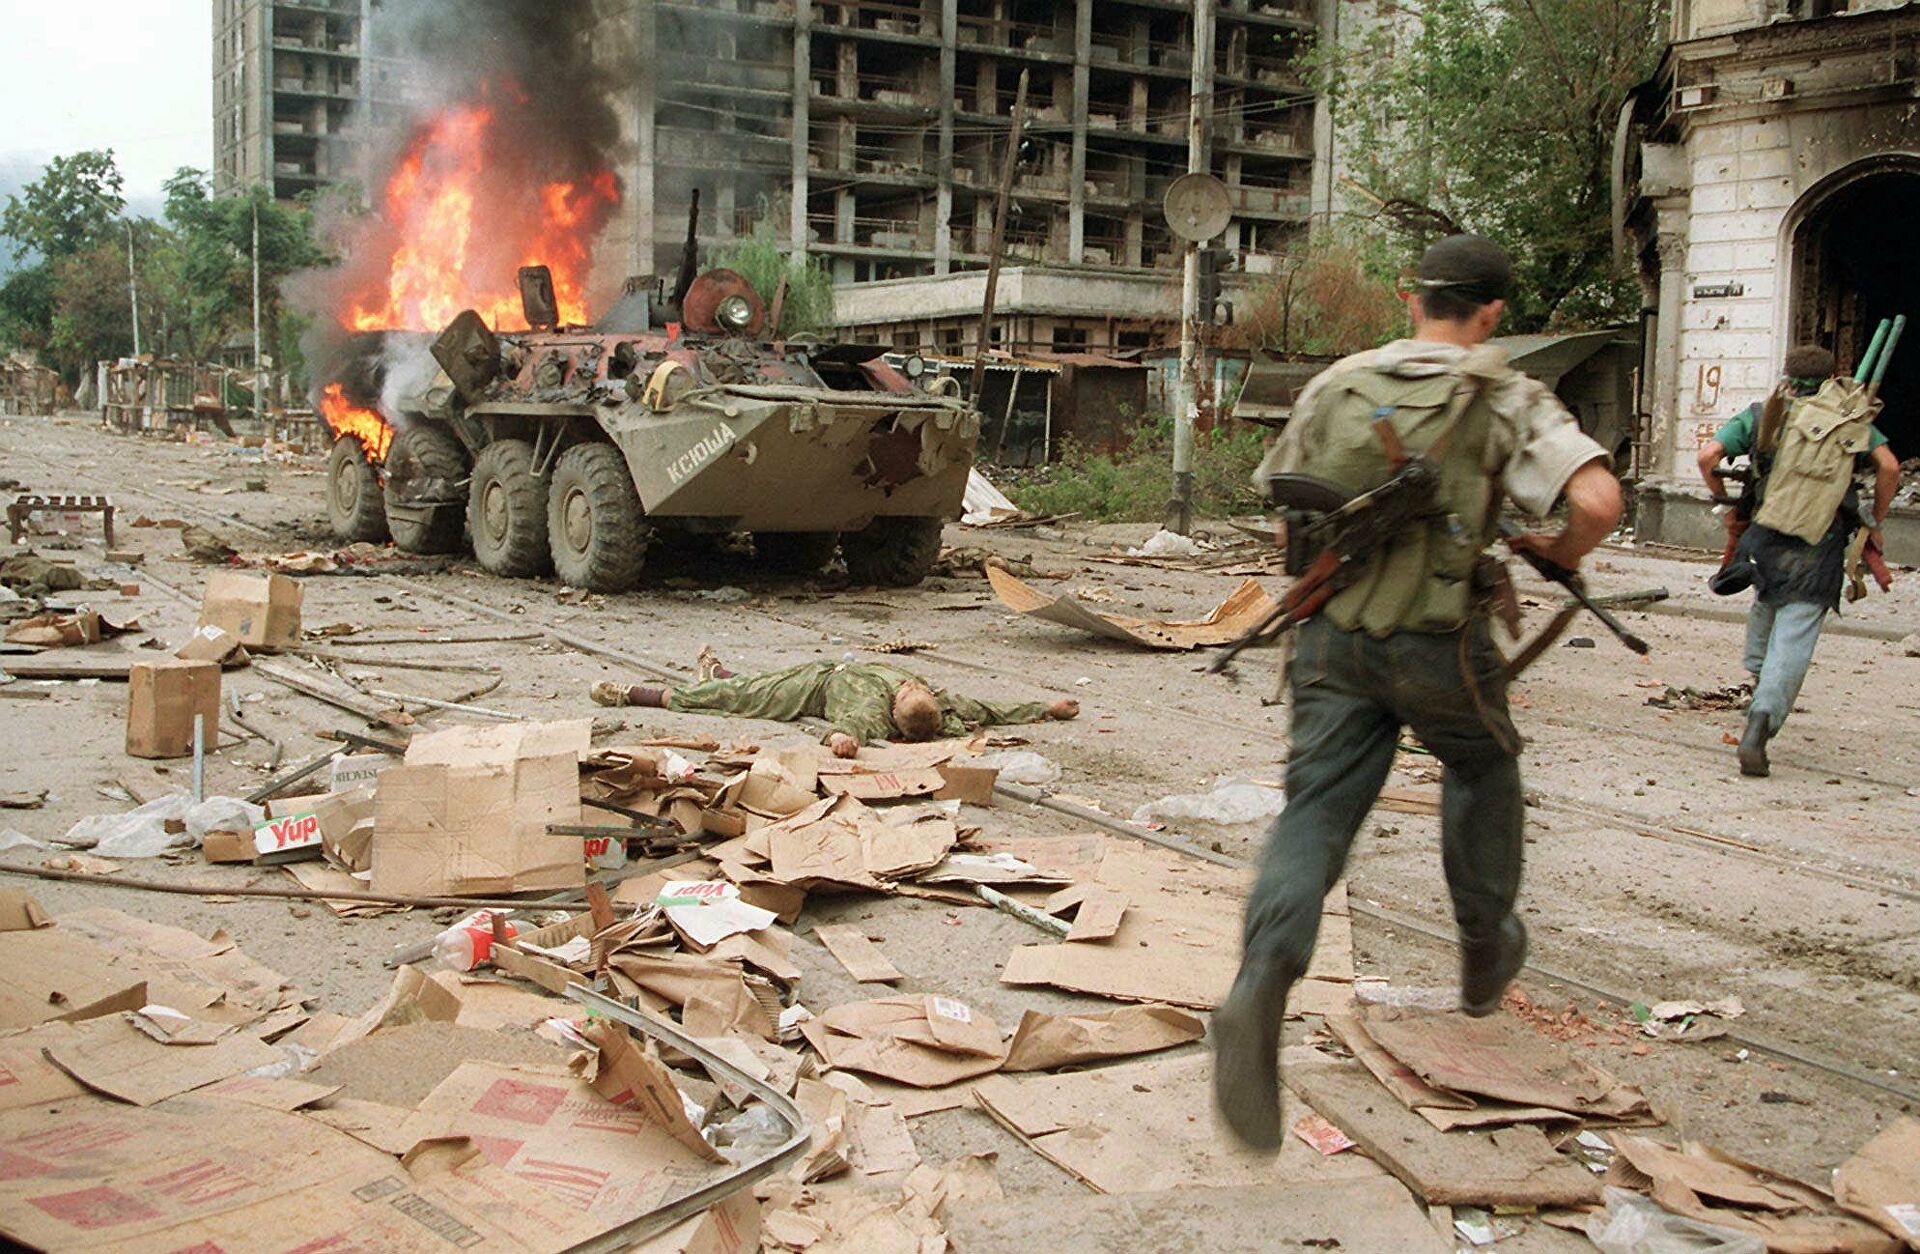 Теракт перед чеченской войной. Операция джихад Грозный август 1996. Бои в Грозном 1996 год август. Штурм Грозного 1996 август. Чечня Грозный штурм август 1995.